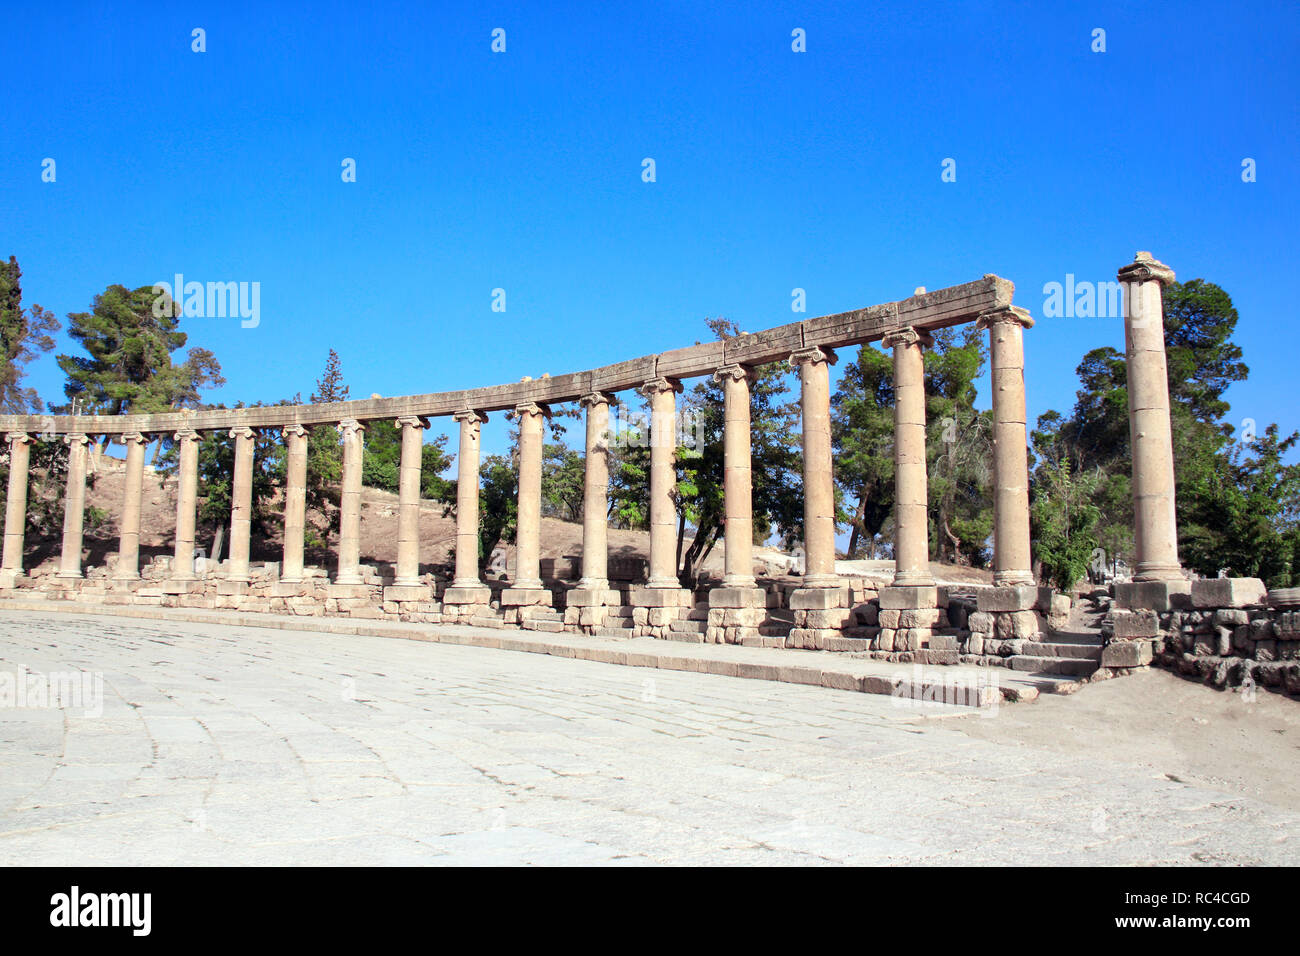 Colonne ioniche su Plaza ovale con in Jerash (Gerasa), antica capitale romana e la più grande città di Jerash Governatorato, Giordania, Medio Oriente. UNESCO World h Foto Stock